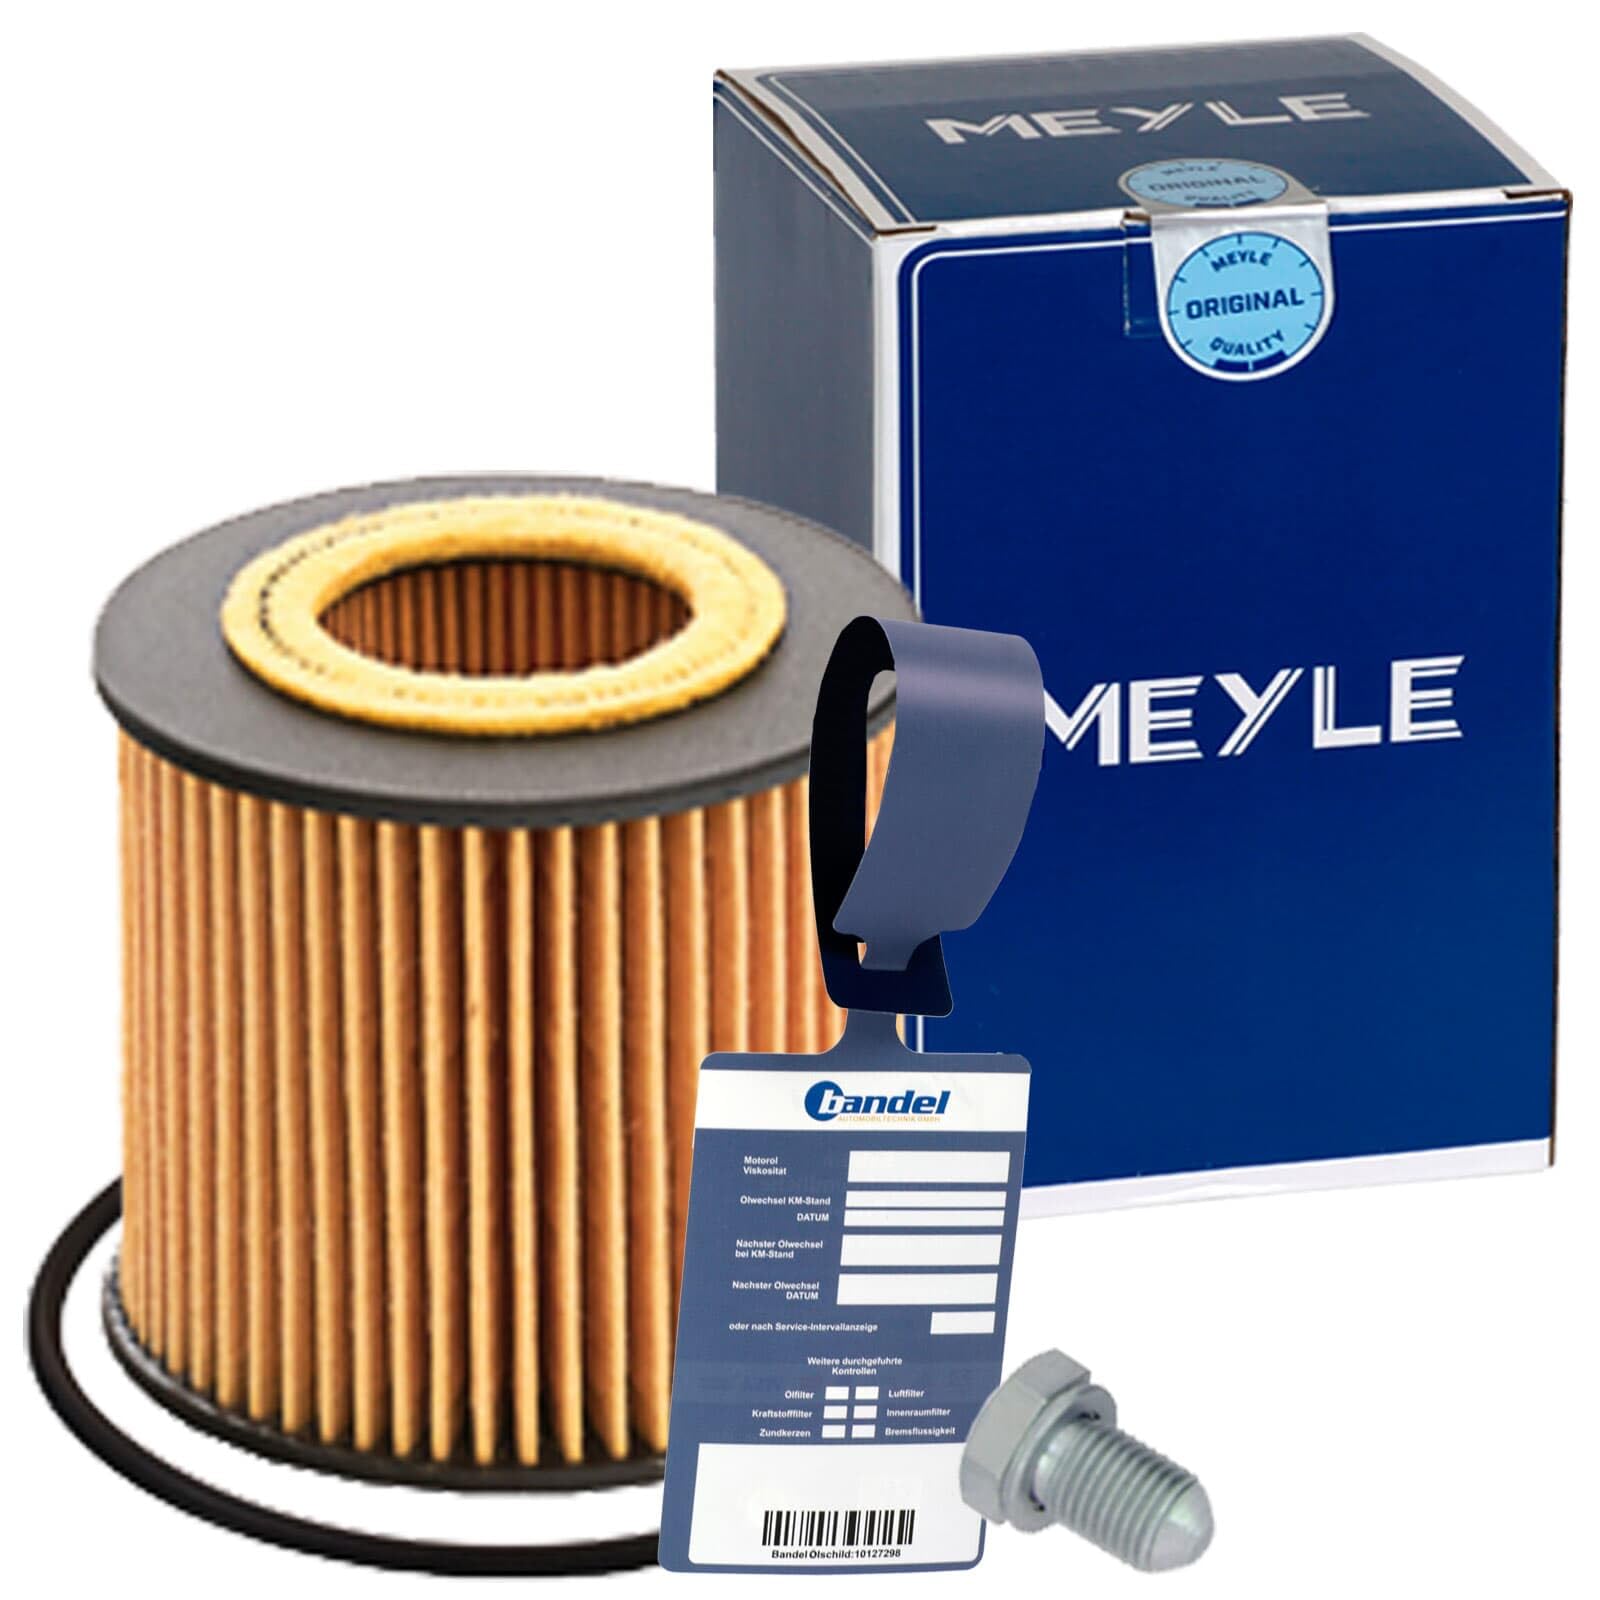 Meyle Ölfilter passend für IBIZA 4 6J 1.2 + LPG 60 + 70 PS von BandelOne